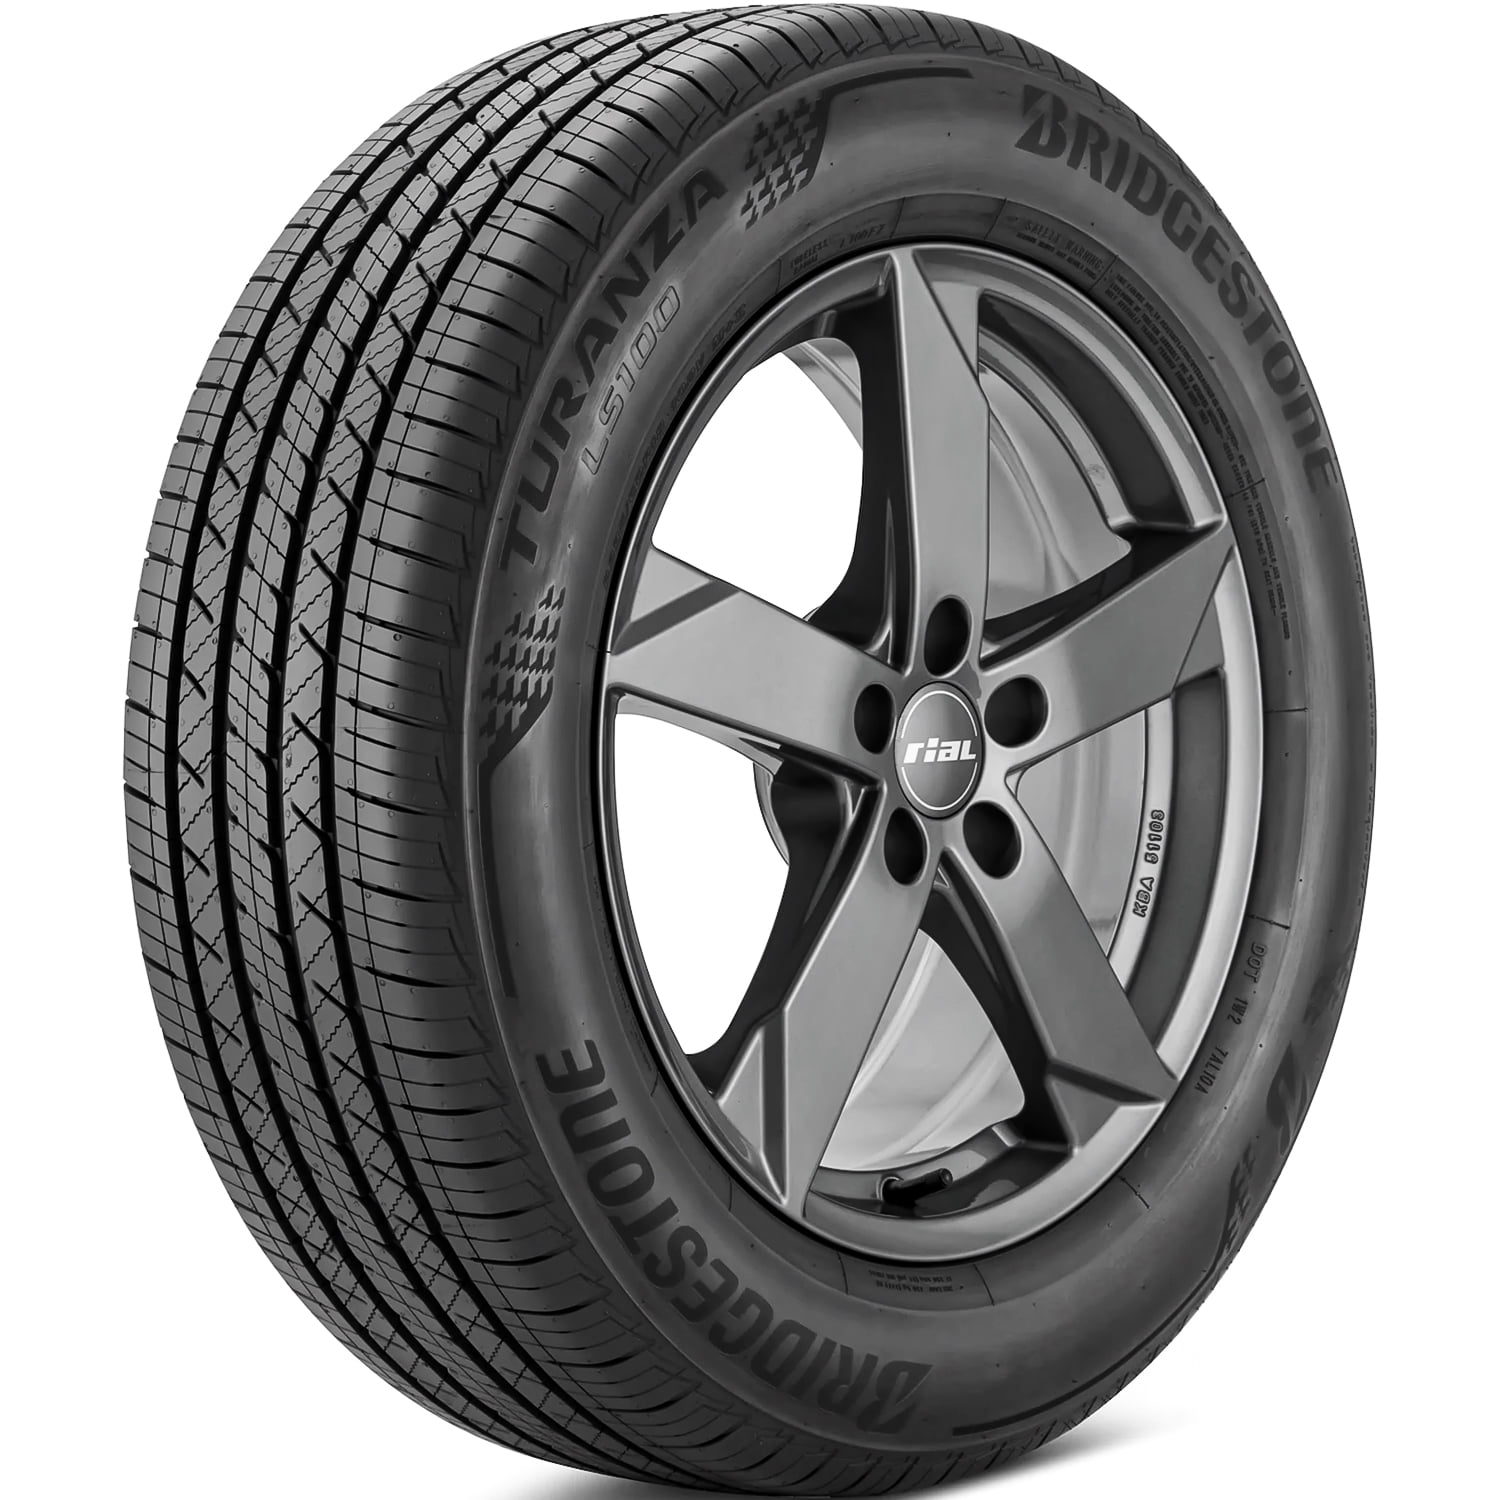 Bridgestone Turanza LS100 MOE 245/40R18 97H XL Tire